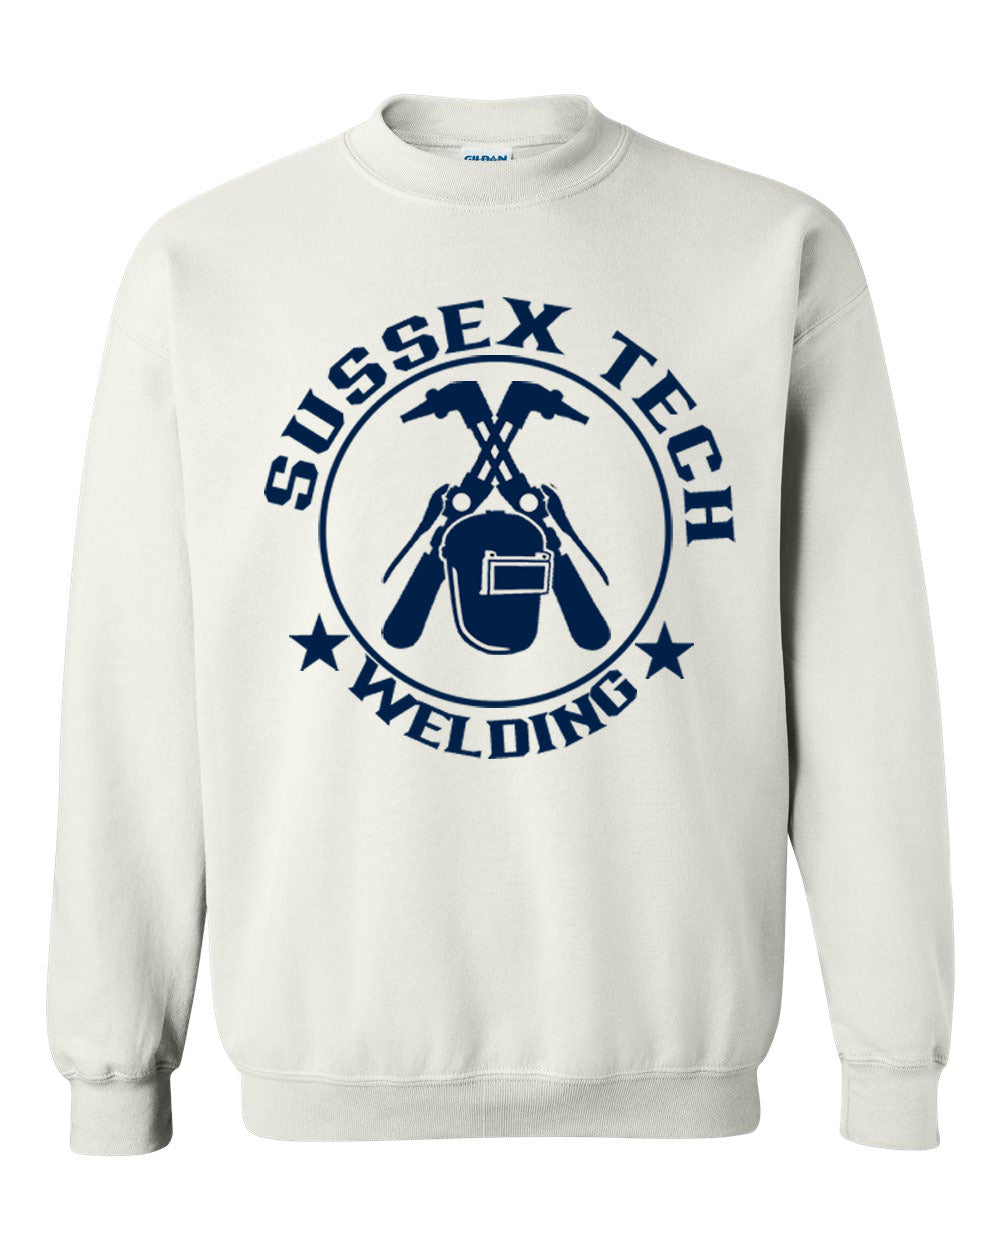 Sussex Tech Welding Design 6 non hooded sweatshirt